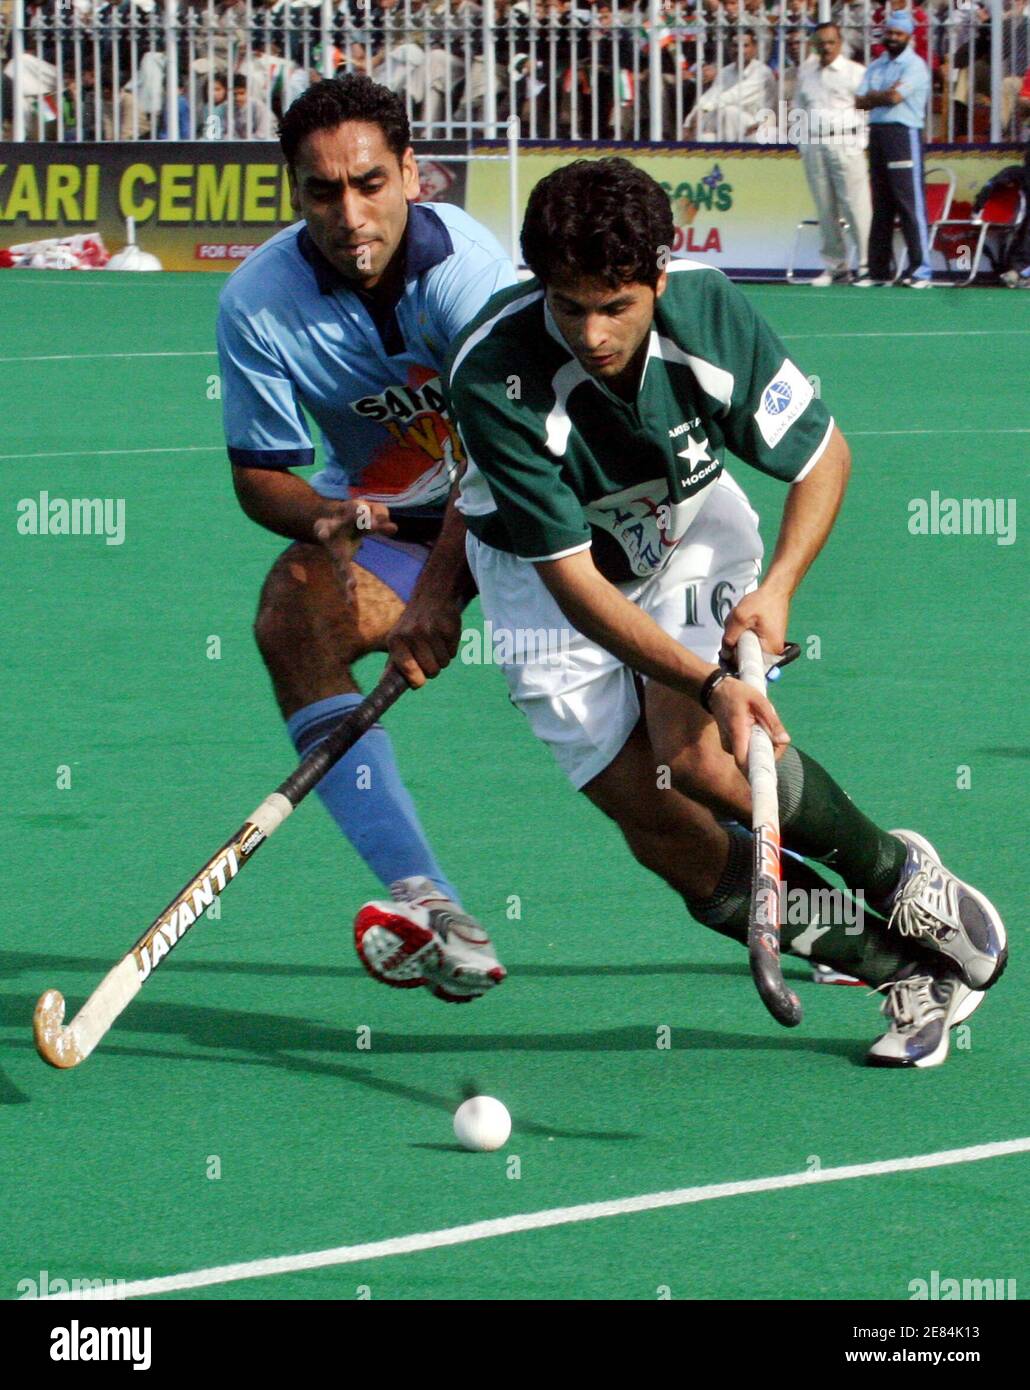 Pakistanischer Hockeyspieler Imran Khan (R) und indischen Spieler Tebir Kampf um den Ball während der sechste und letzte Feldhockey-Testspiel zwischen Pakistan und Indien im Armee-Hockey-Stadion in Rawalpindi 26. Februar 2006. Das Spiel endete mit einem Remis, als Pakistan die sechs-Match Serie 3: 1 gewonnen.     REUTERS/Faisal Mahmood Stockfoto